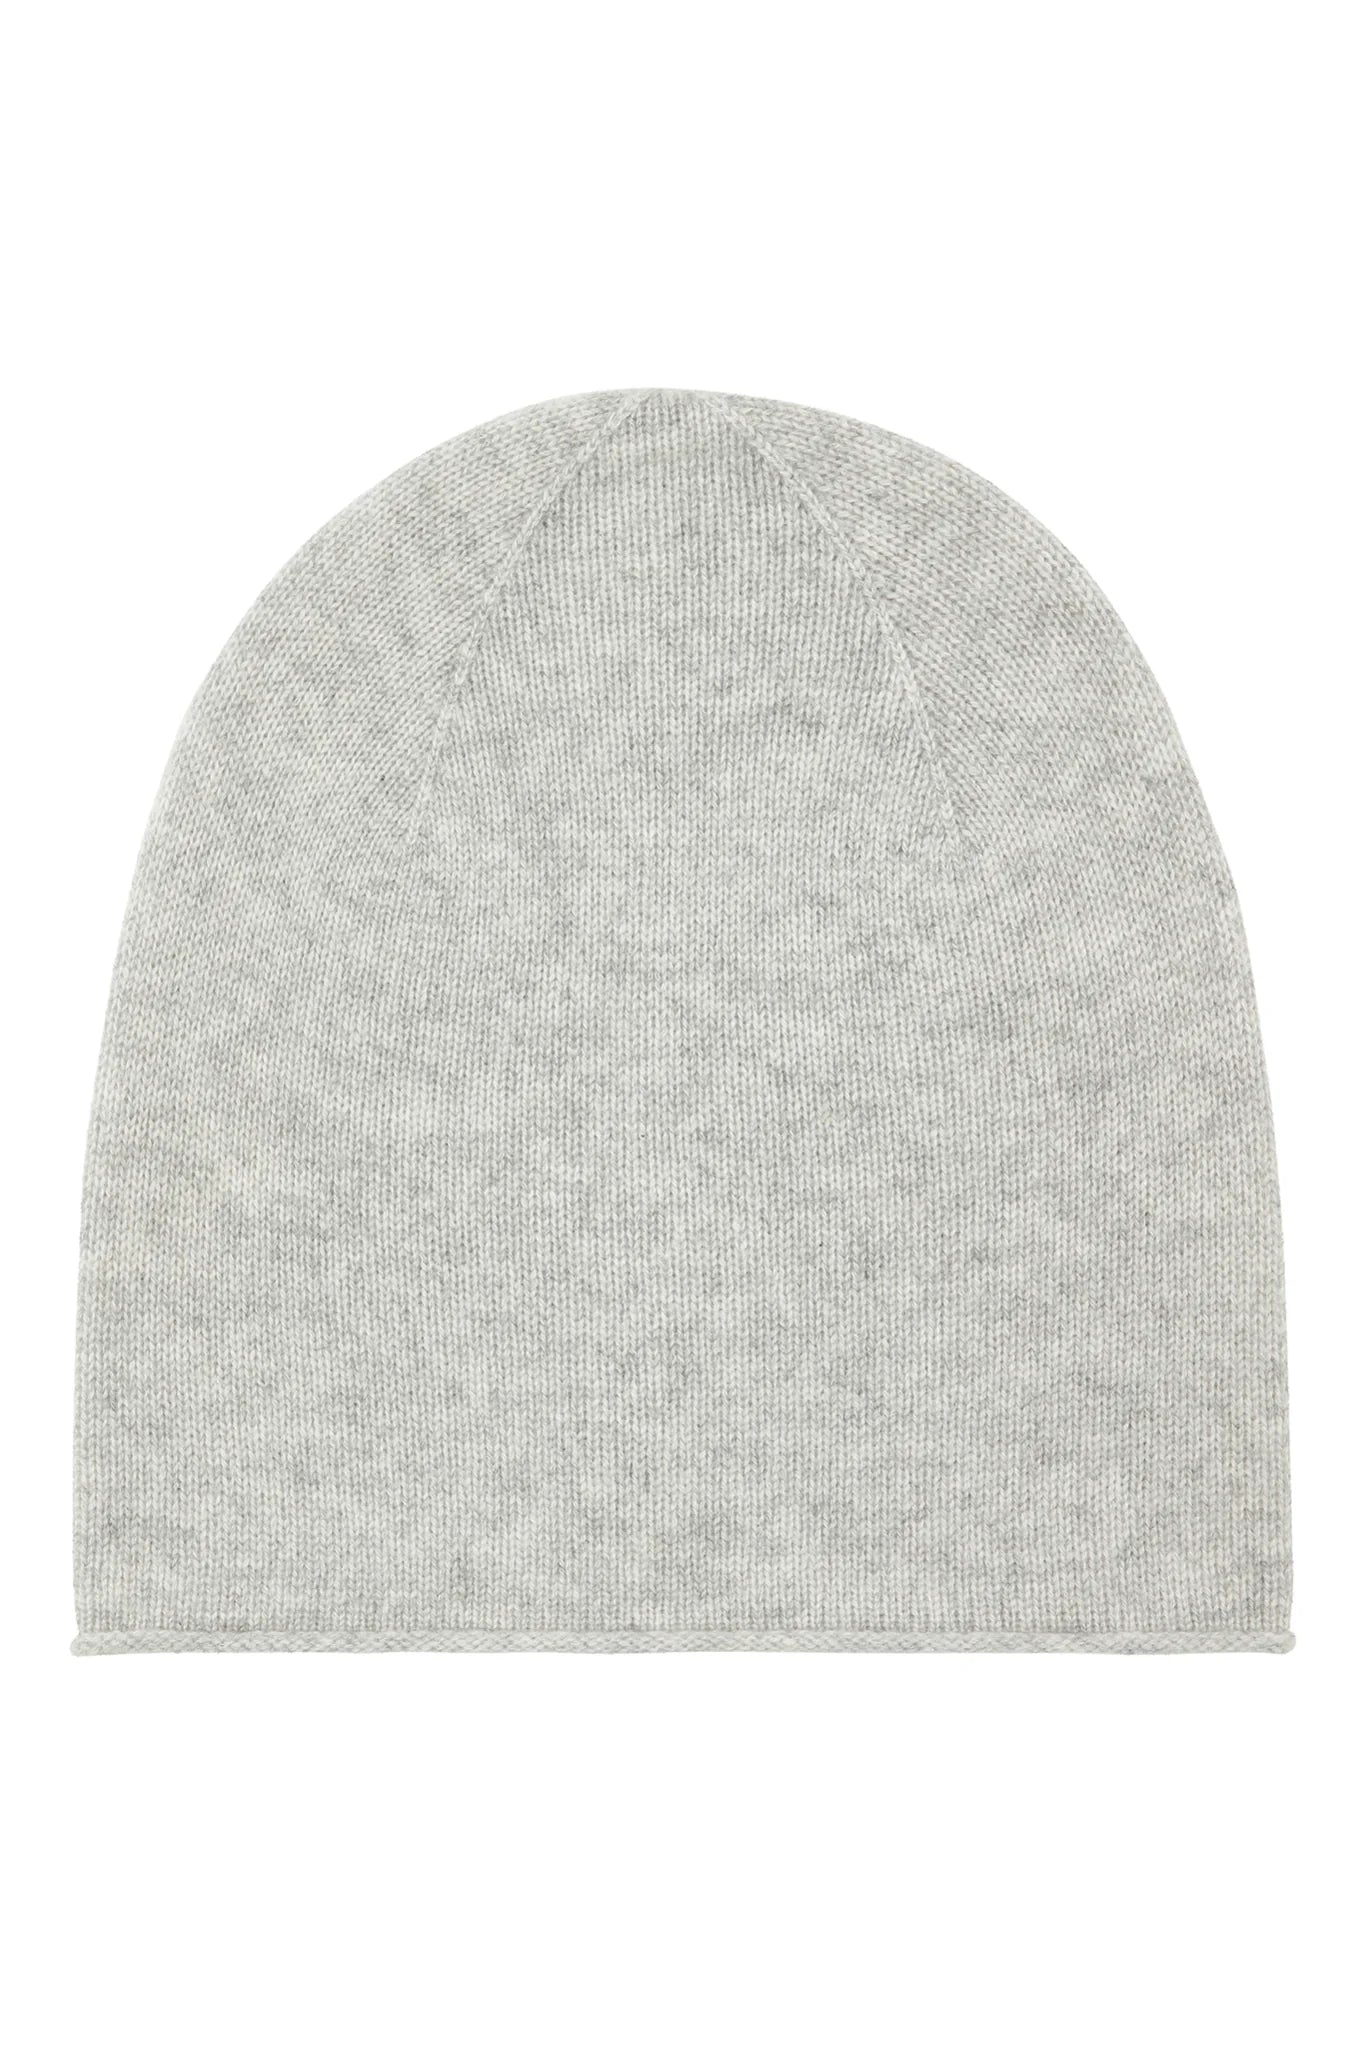 100% Cashmere Beanie Hat - Grey